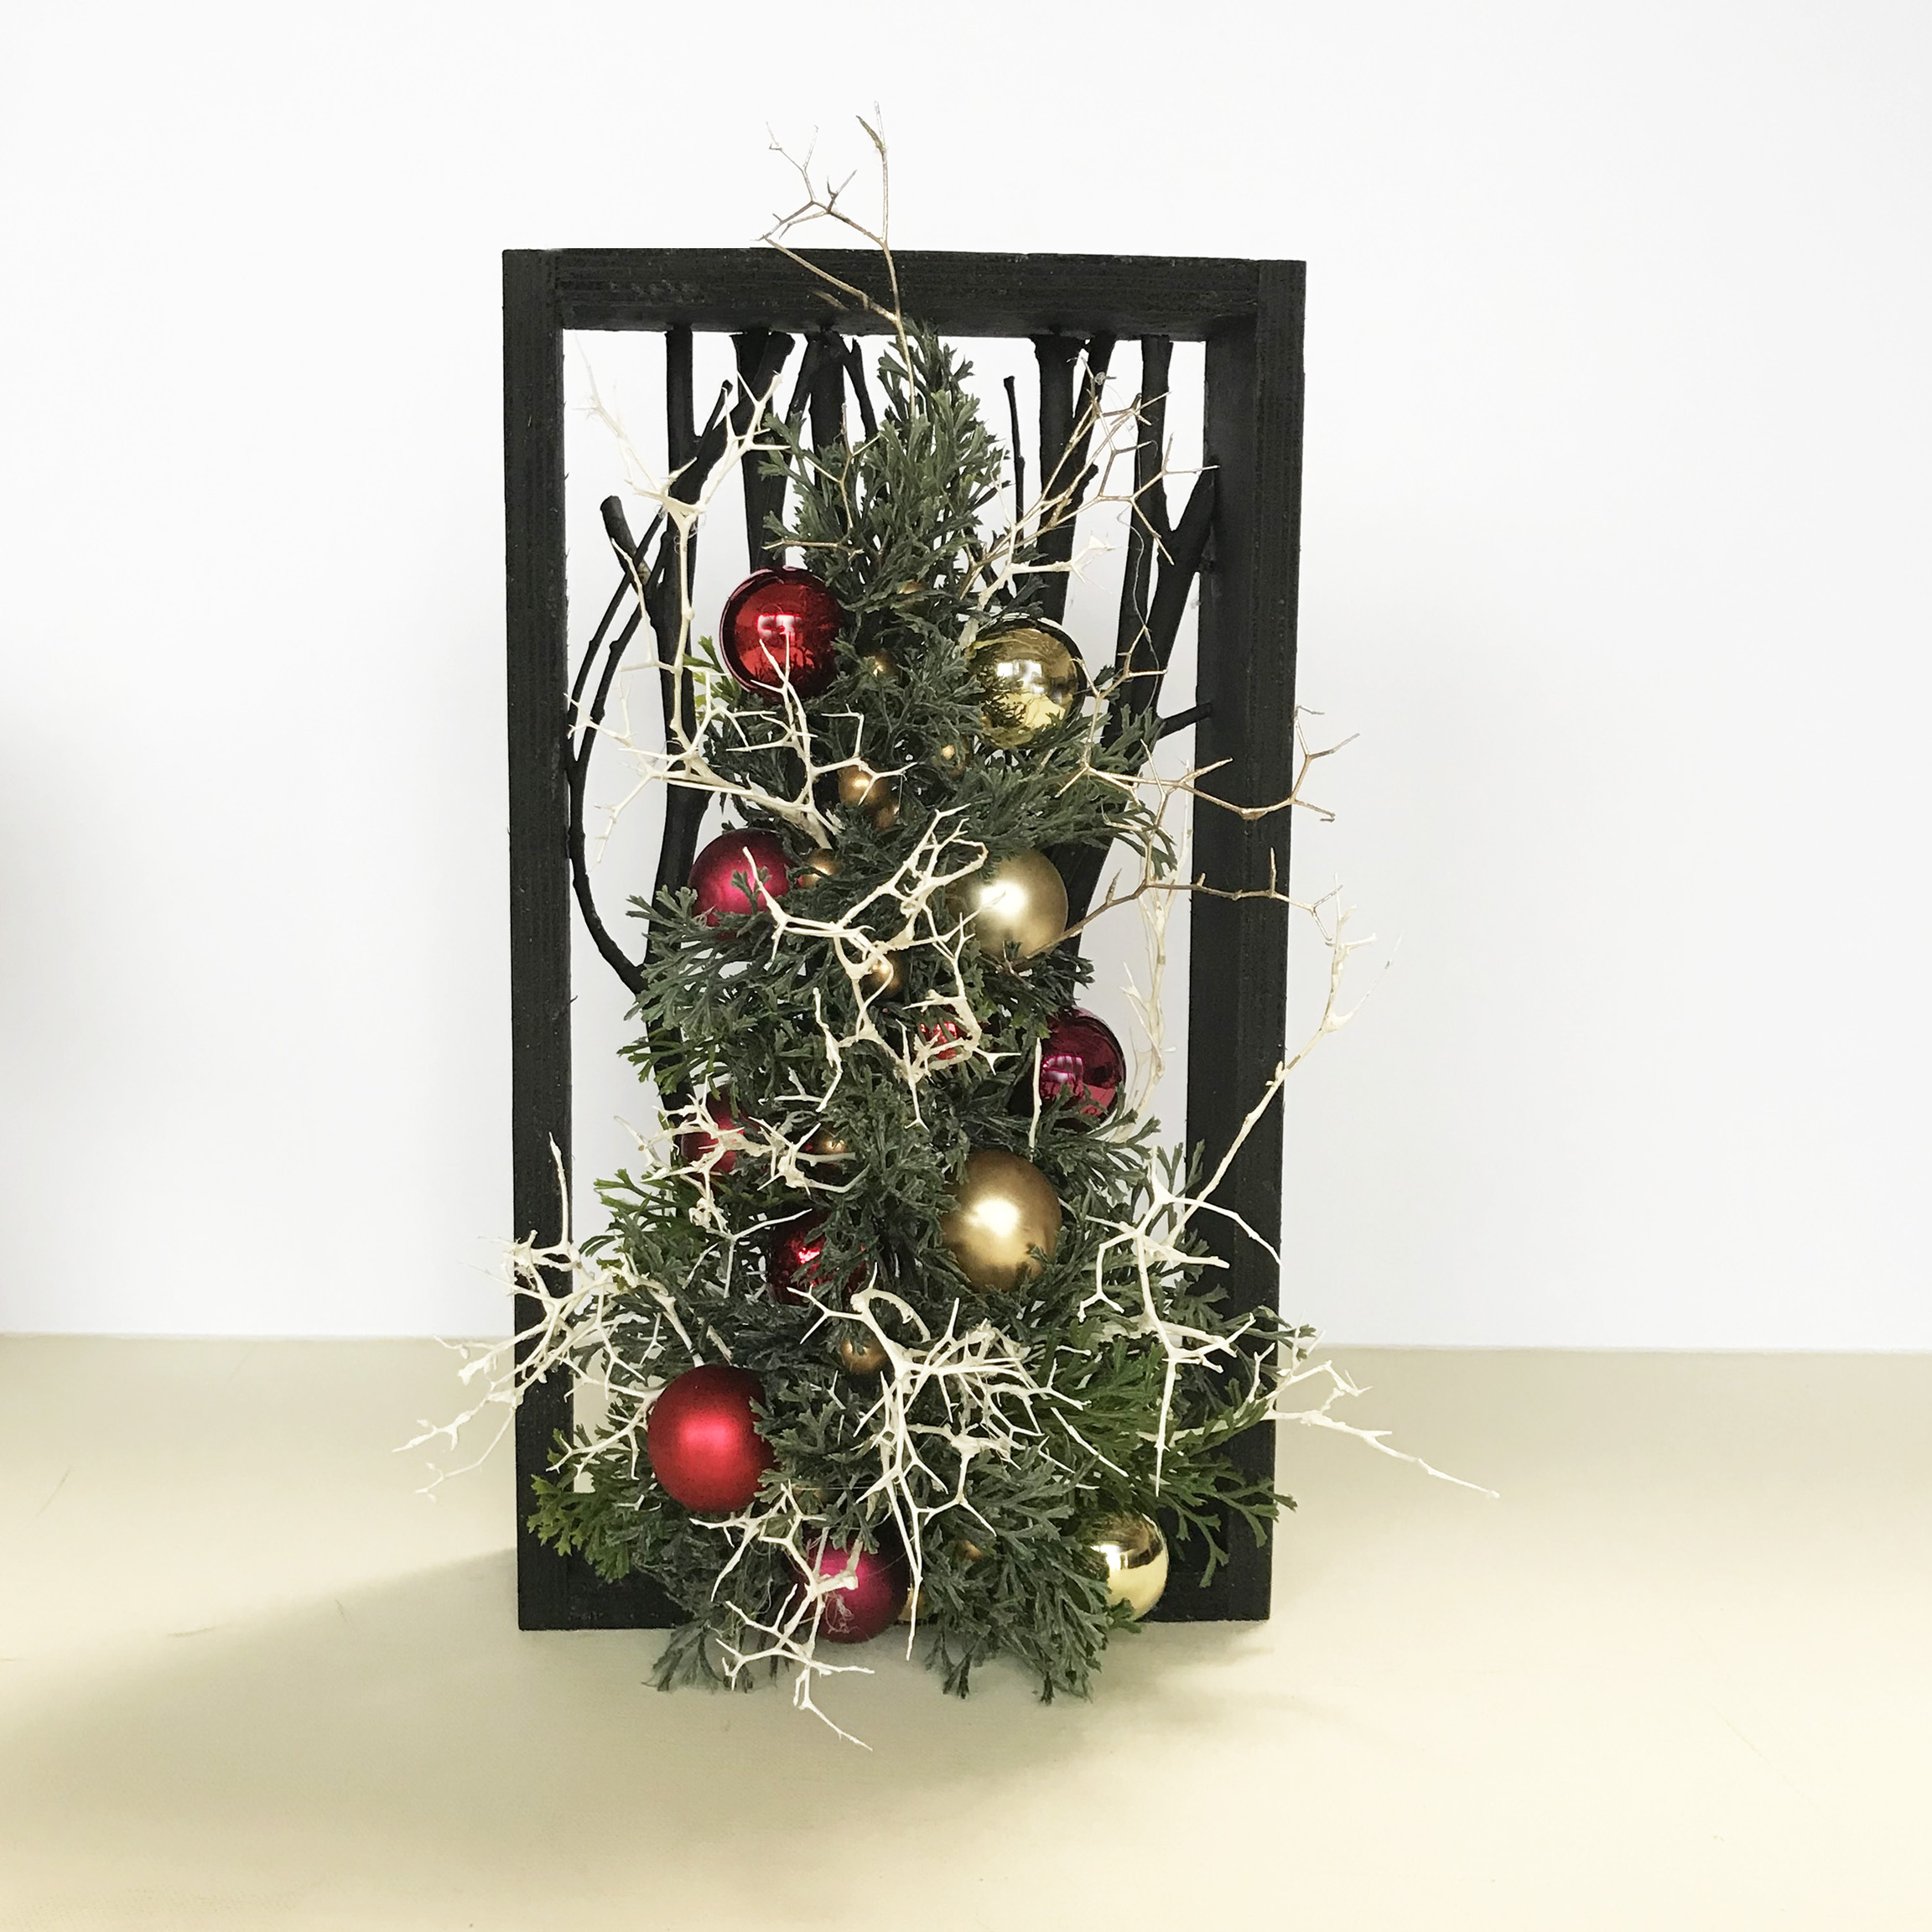 リースの森クリスマスアレンジメント Fch 001 Iichi ハンドメイド クラフト作品 手仕事品の通販